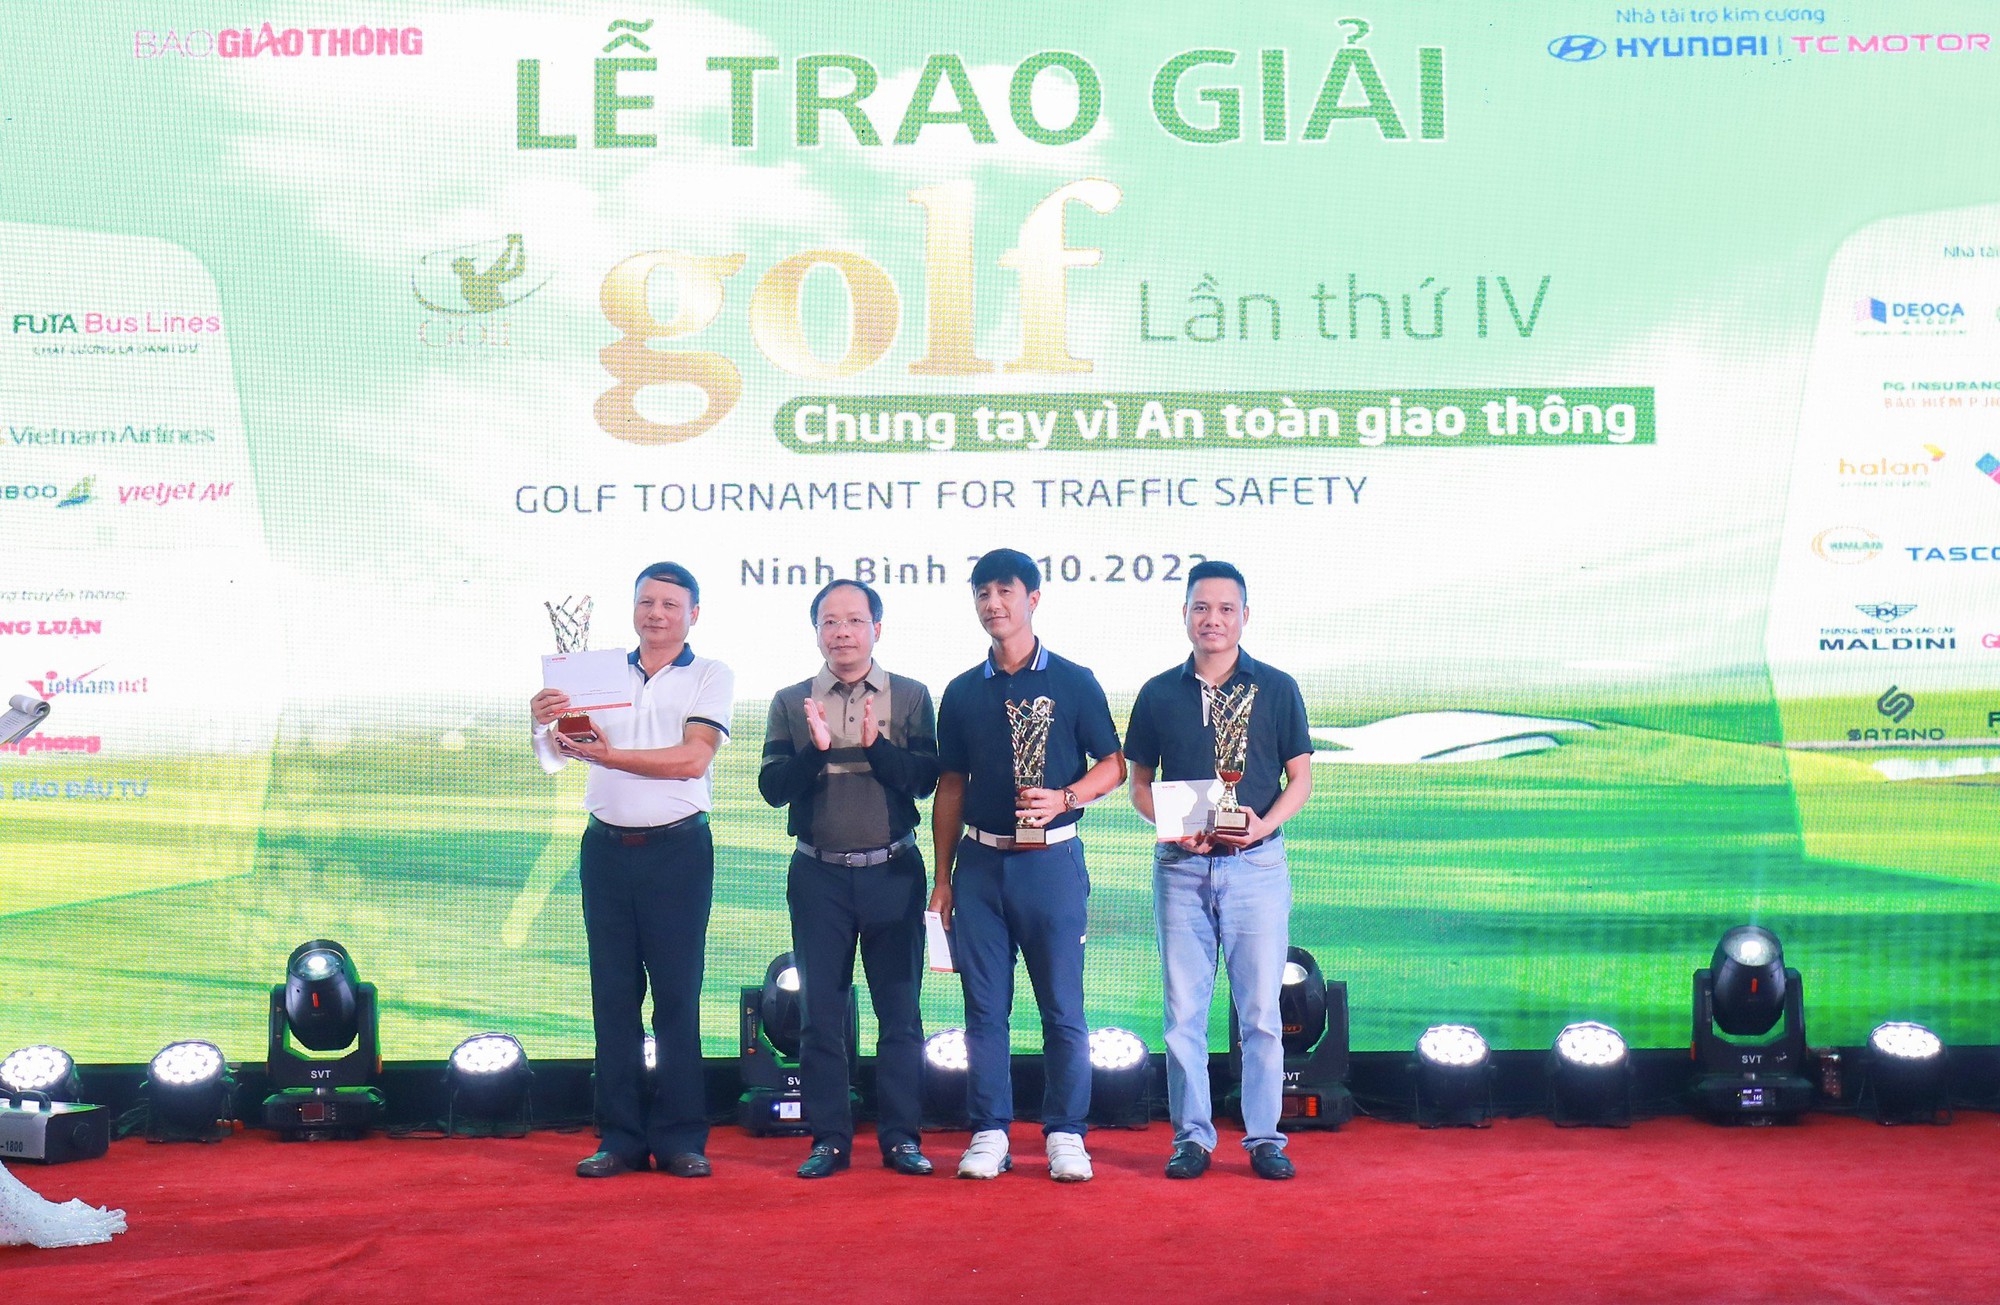 Golfer Nguyễn Hồng Hải vô địch Giải Golf chung tay vì ATGT 2023 - Ảnh 5.